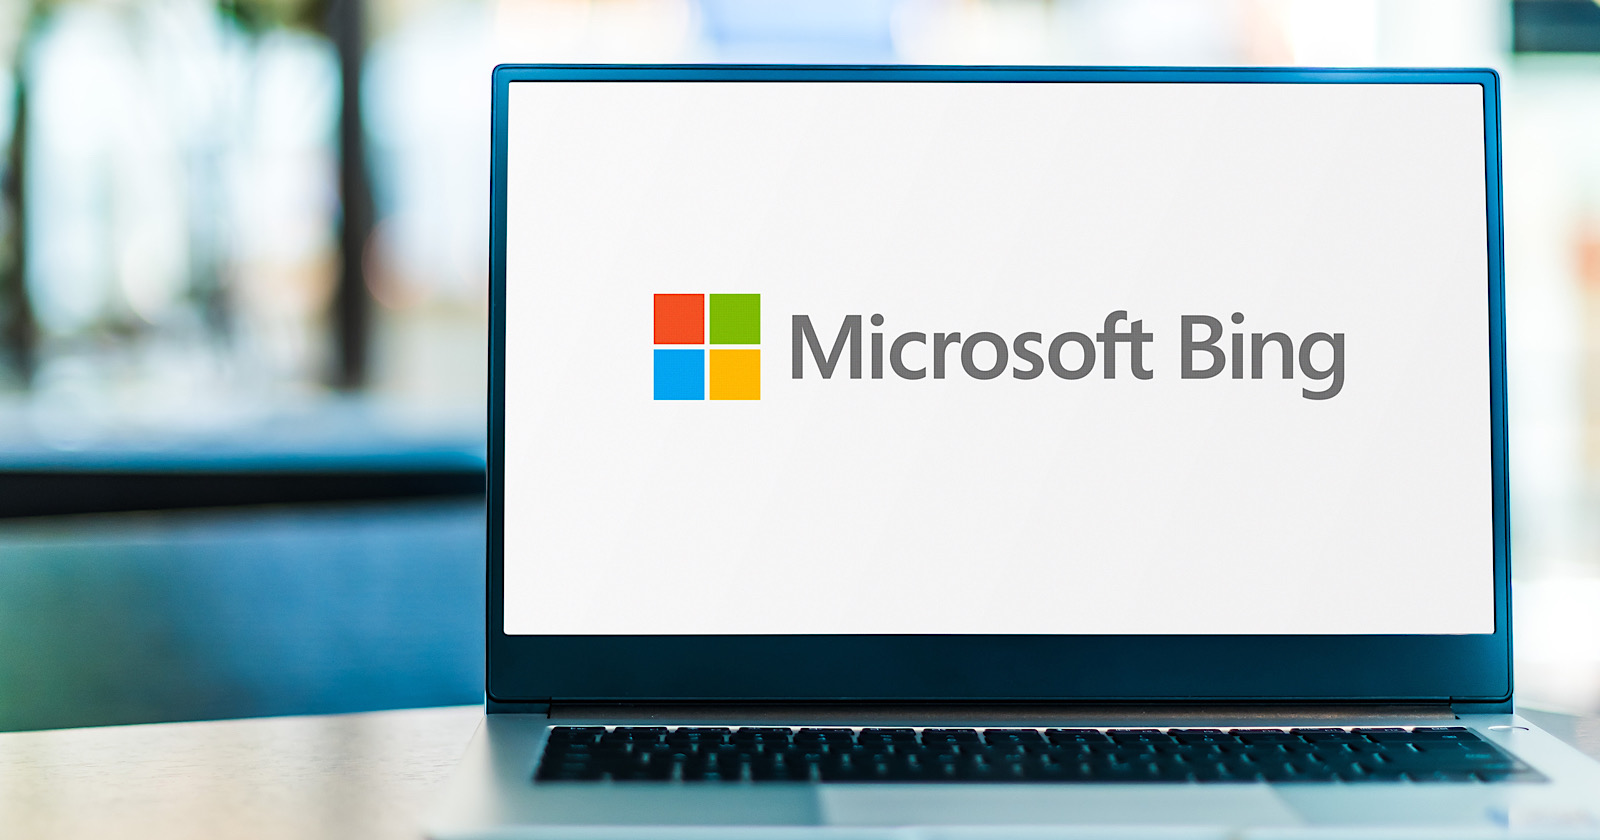 Sempat Terlupakan, Kini Microsoft Bing Melonjak 10 Kali Lipat Unduhan